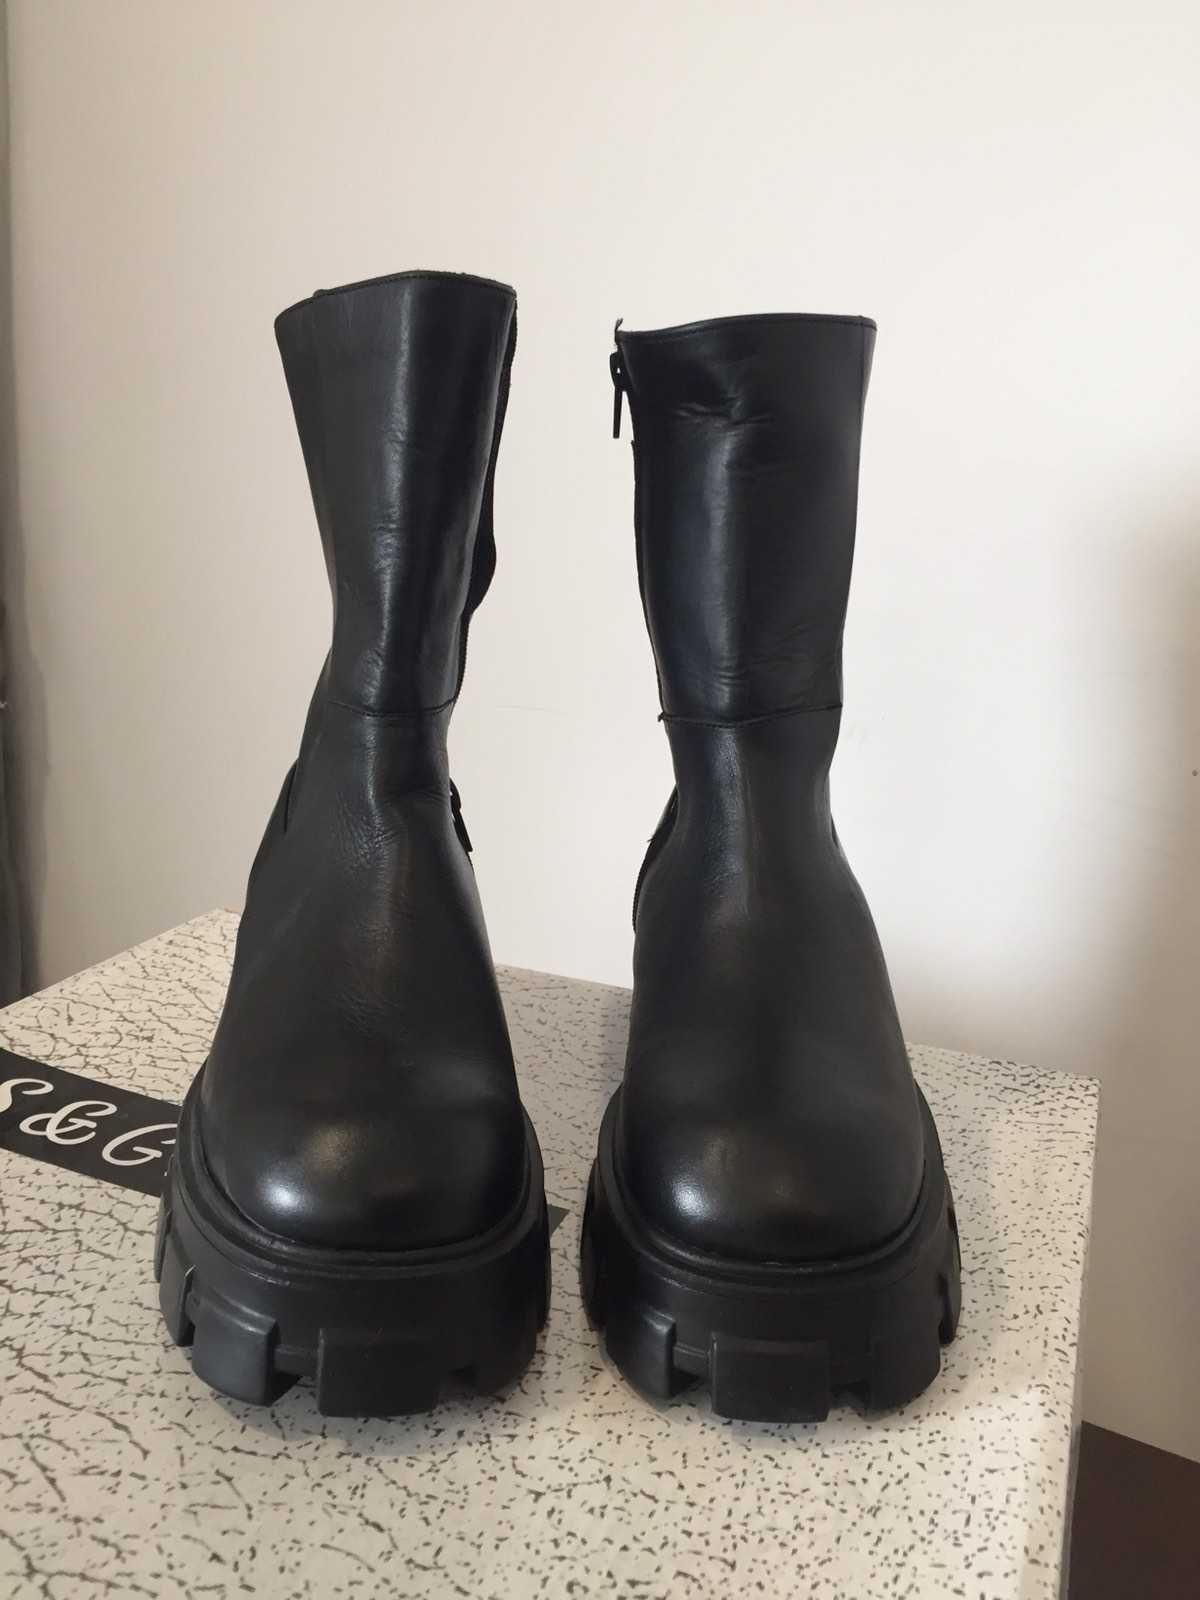 S&G Boots Дамски боти, налични размери 36-37-38